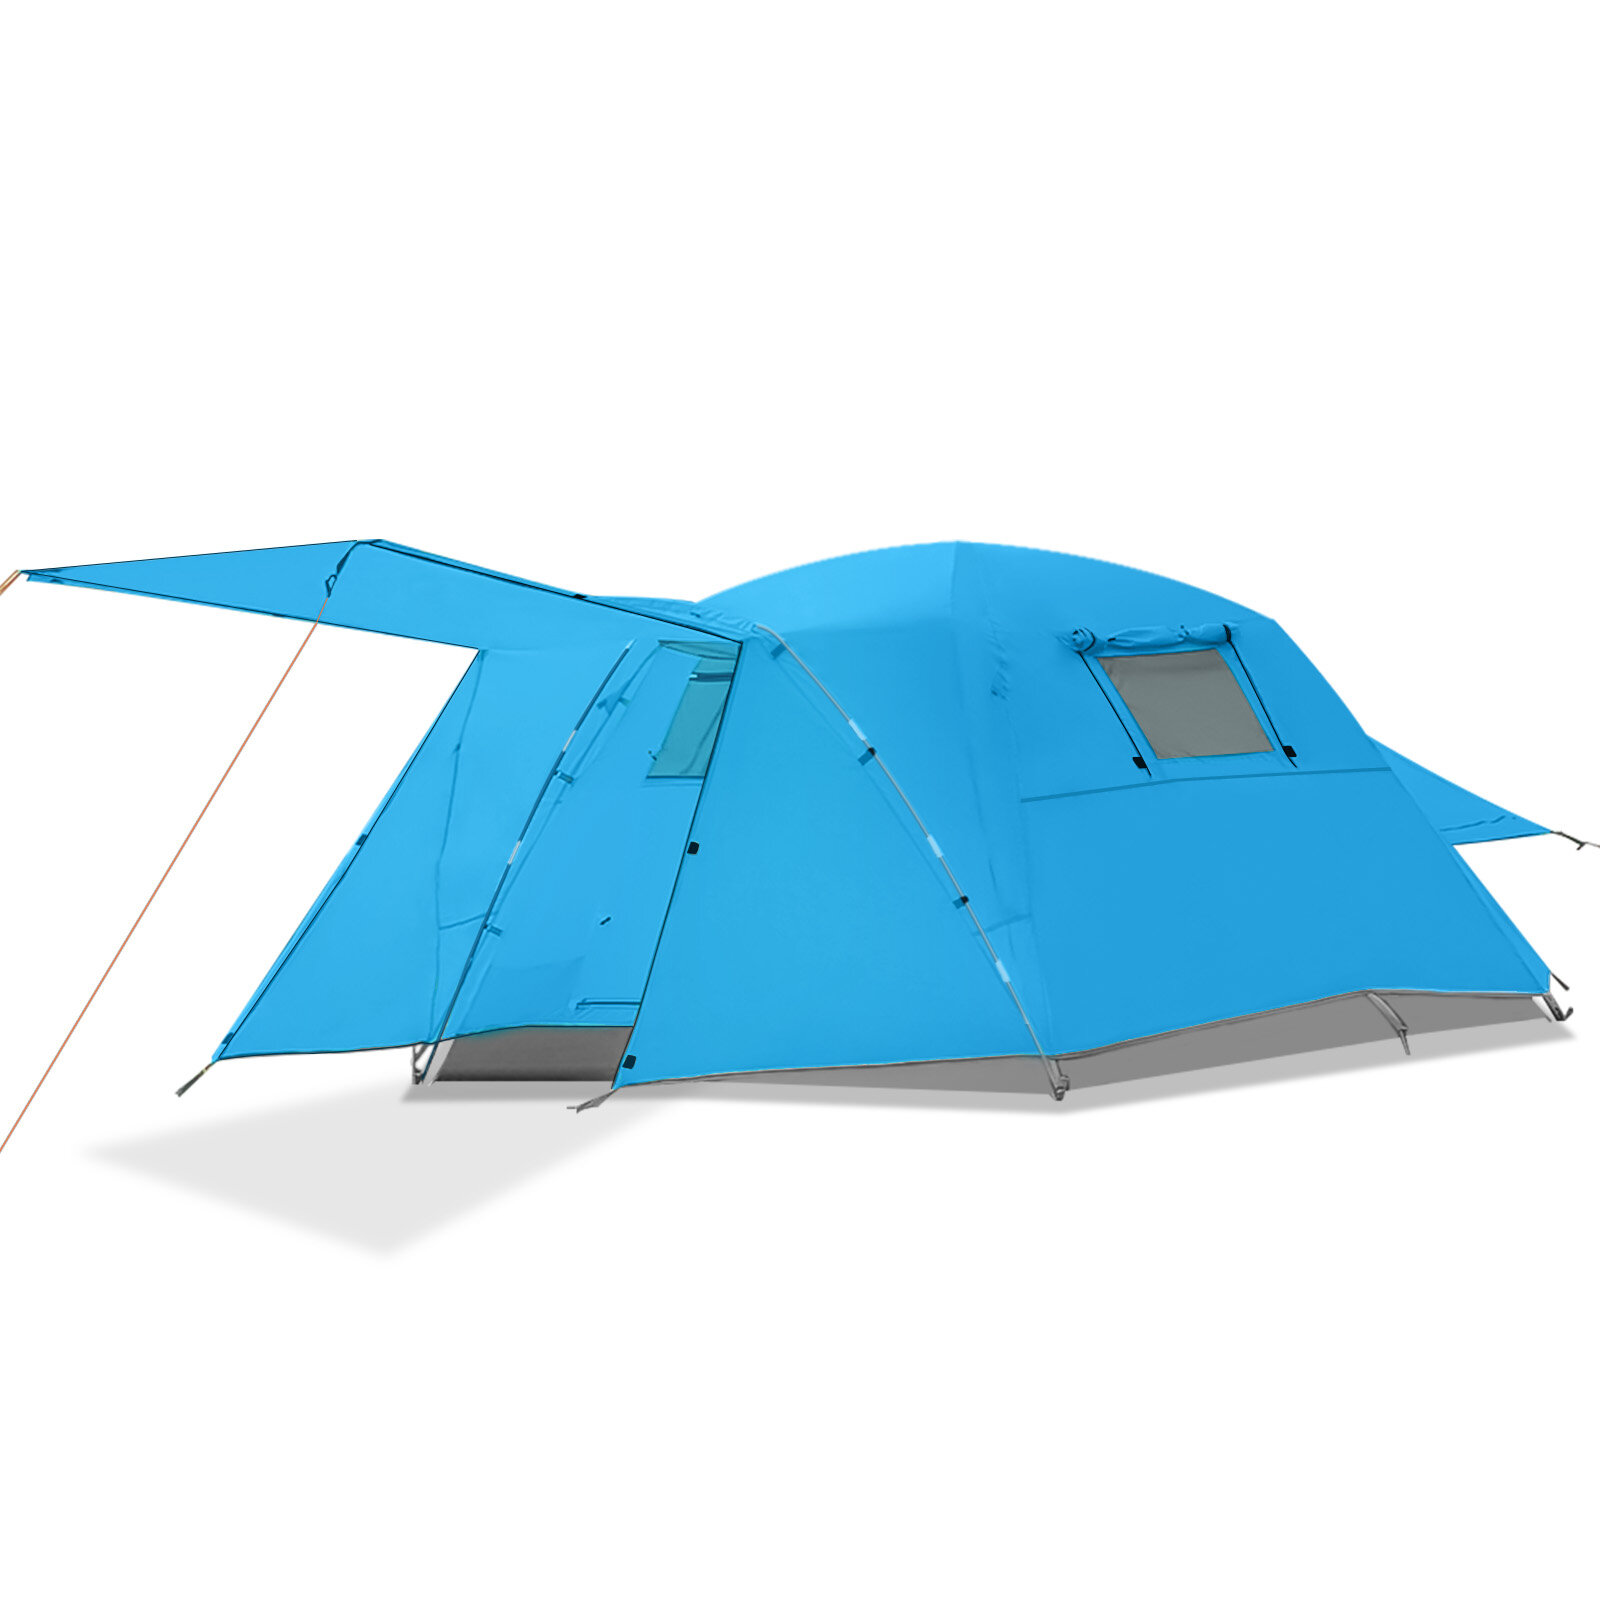 Tente de camping Tooca pour 4 personnes avec salle d'écran, porche, double couche et étanche pour le camping en plein air.